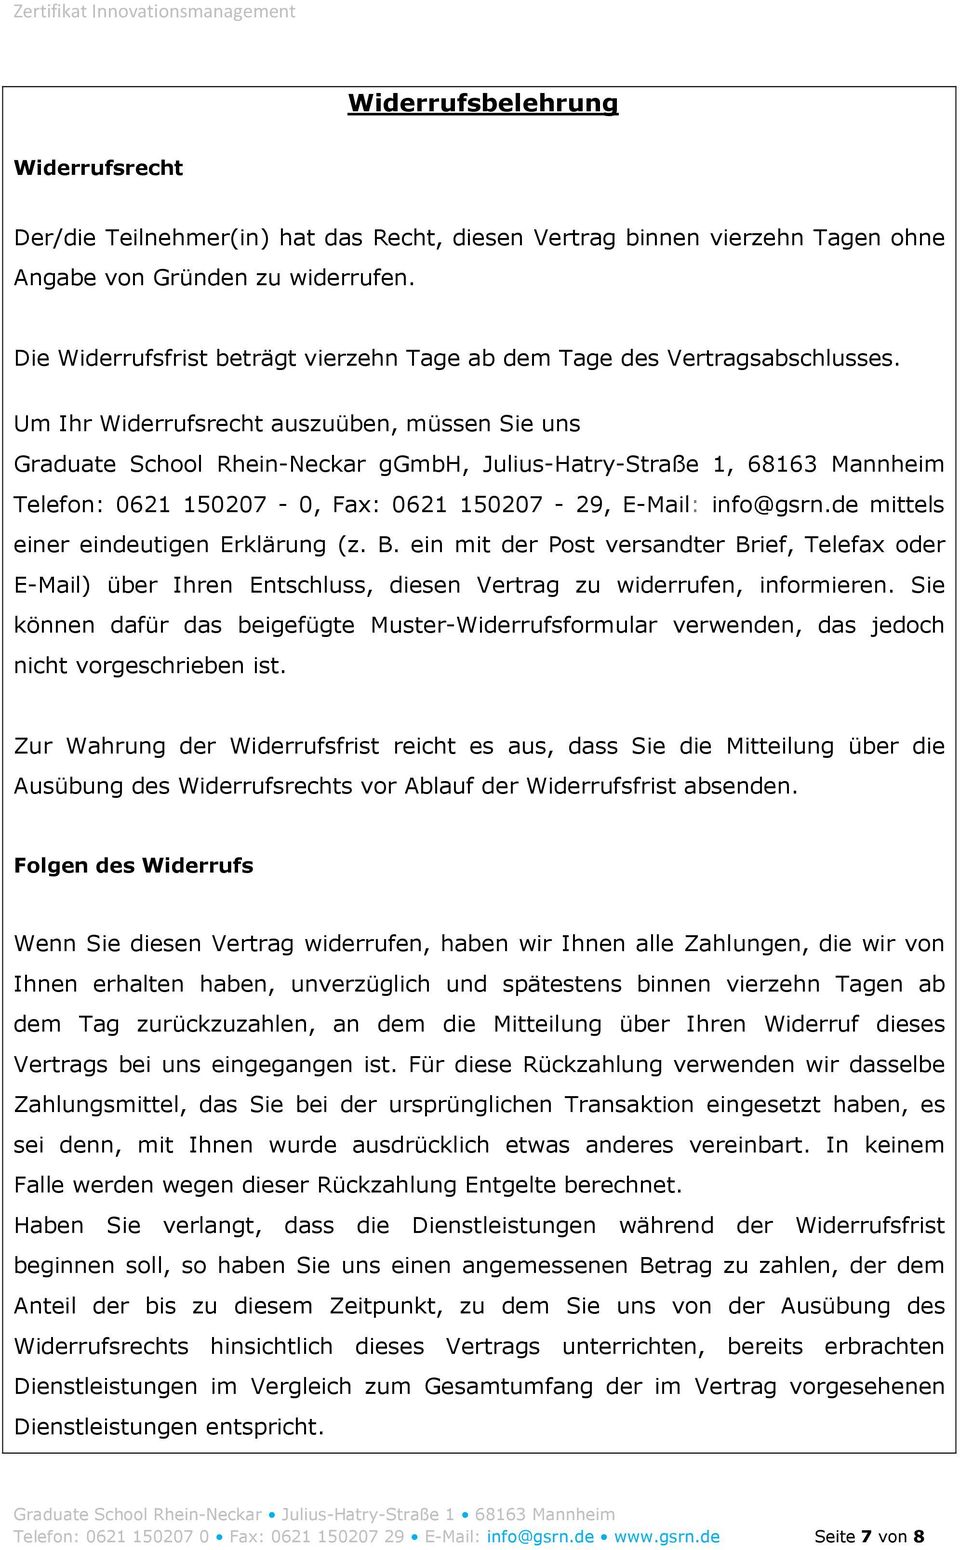 Um Ihr Widerrufsrecht auszuüben, müssen Sie uns Graduate School Rhein-Neckar ggmbh, Julius-Hatry-Straße 1, 68163 Mannheim Telefon: 0621 150207-0, Fax: 0621 150207-29, E-Mail: info@gsrn.